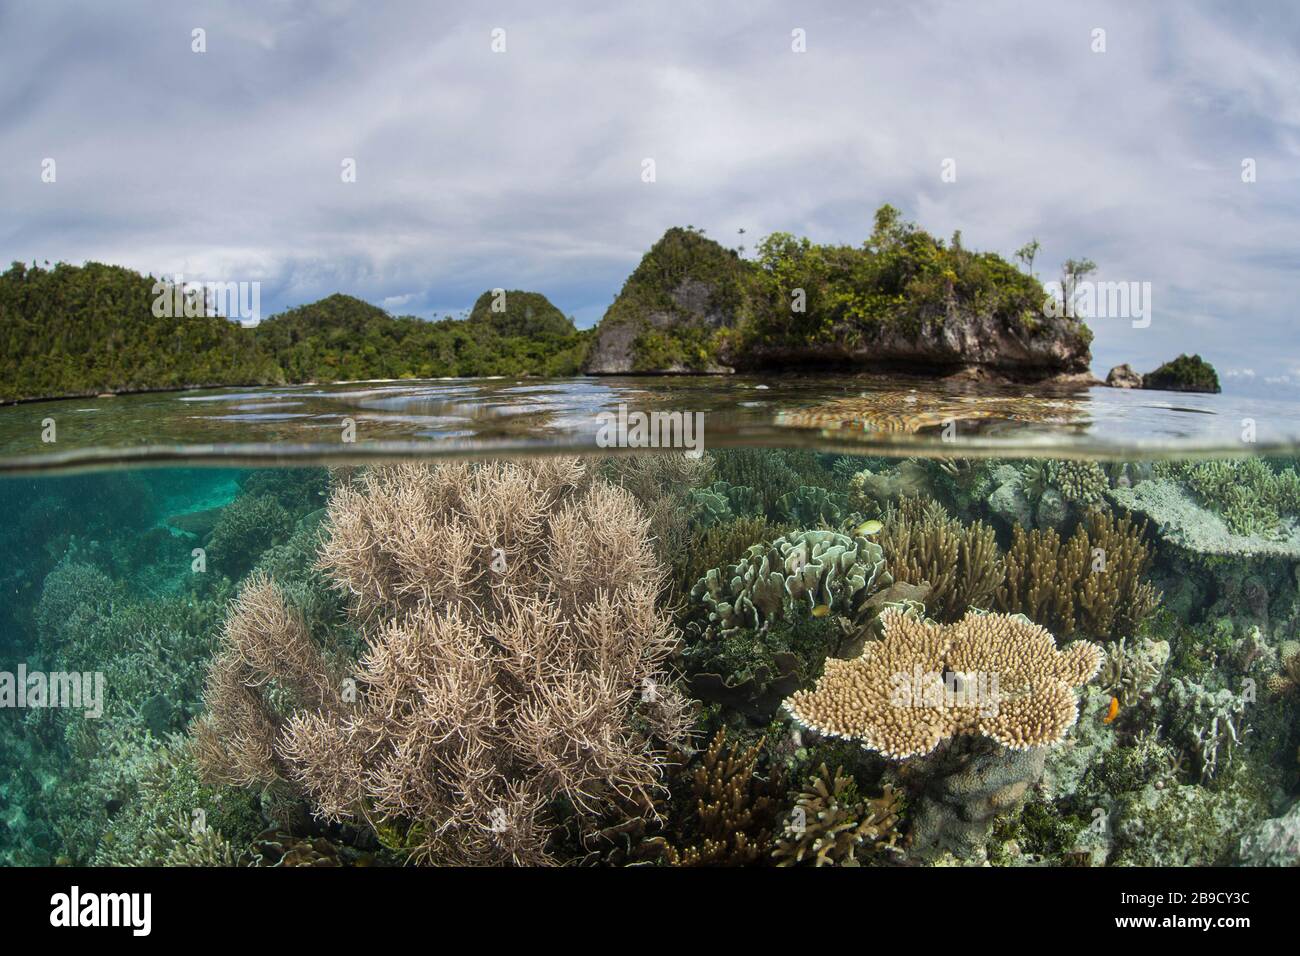 Un hermoso arrecife de coral prospera alrededor de una isla en una parte remota de Raja Ampat, Indonesia. Foto de stock